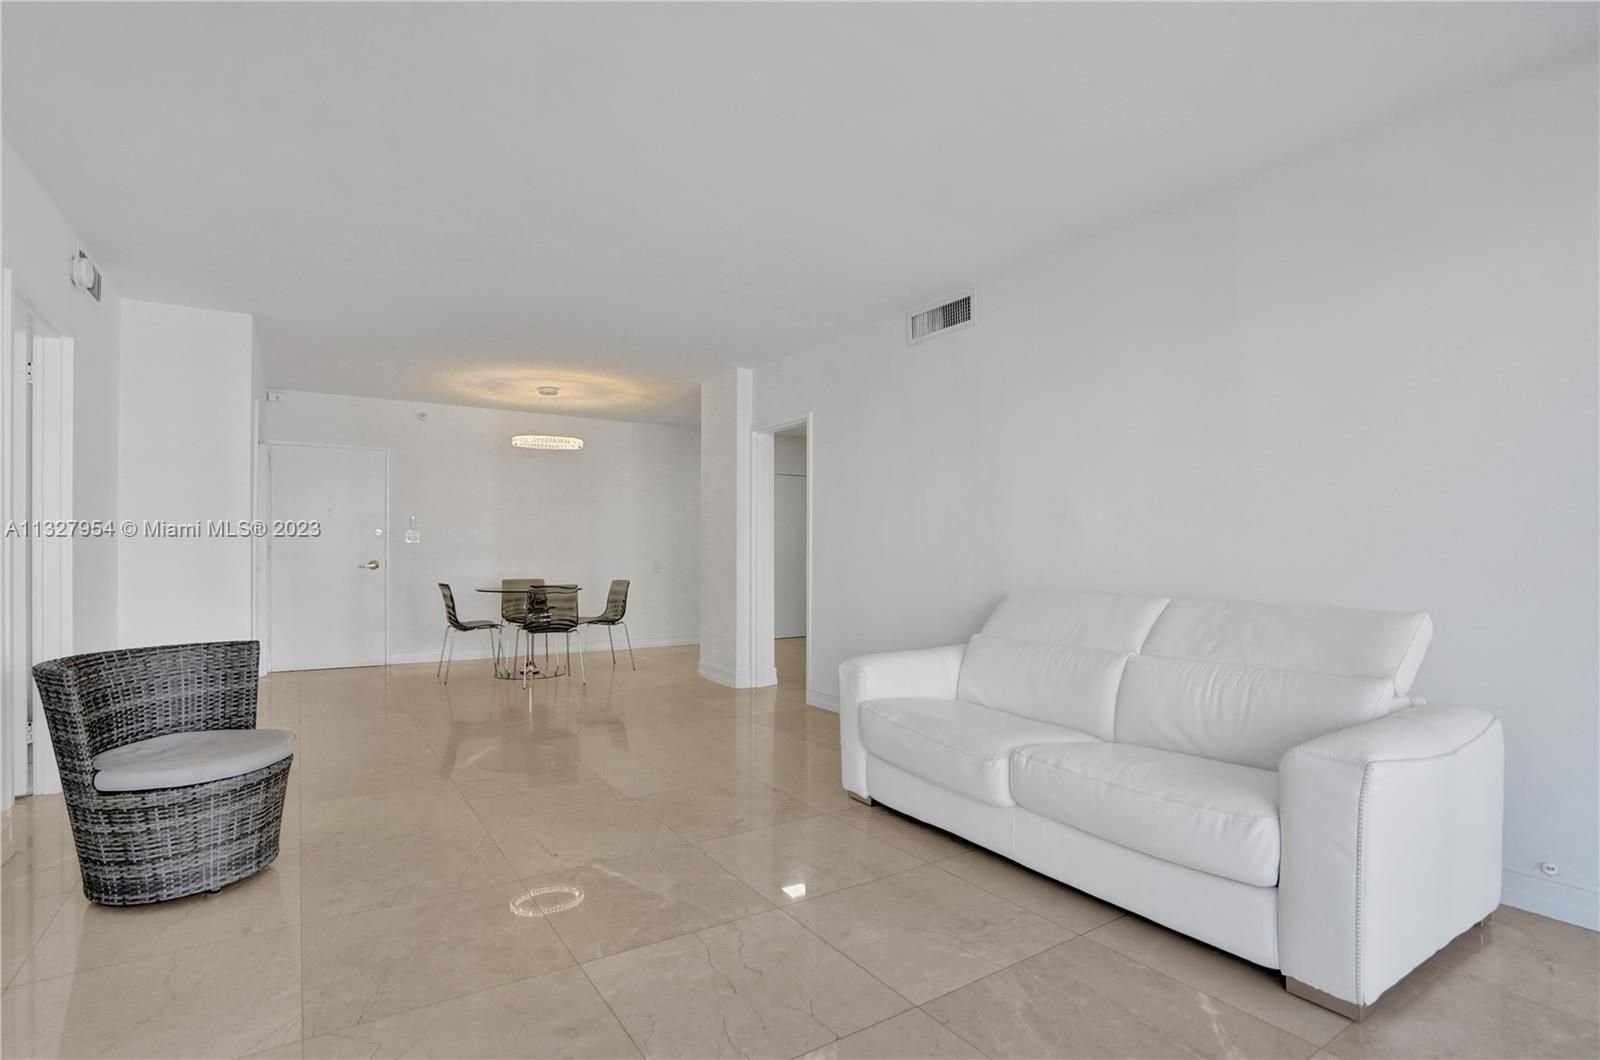 Real estate property located at 5700 Collins Avenue #7D, Miami-Dade County, Miami Beach, FL